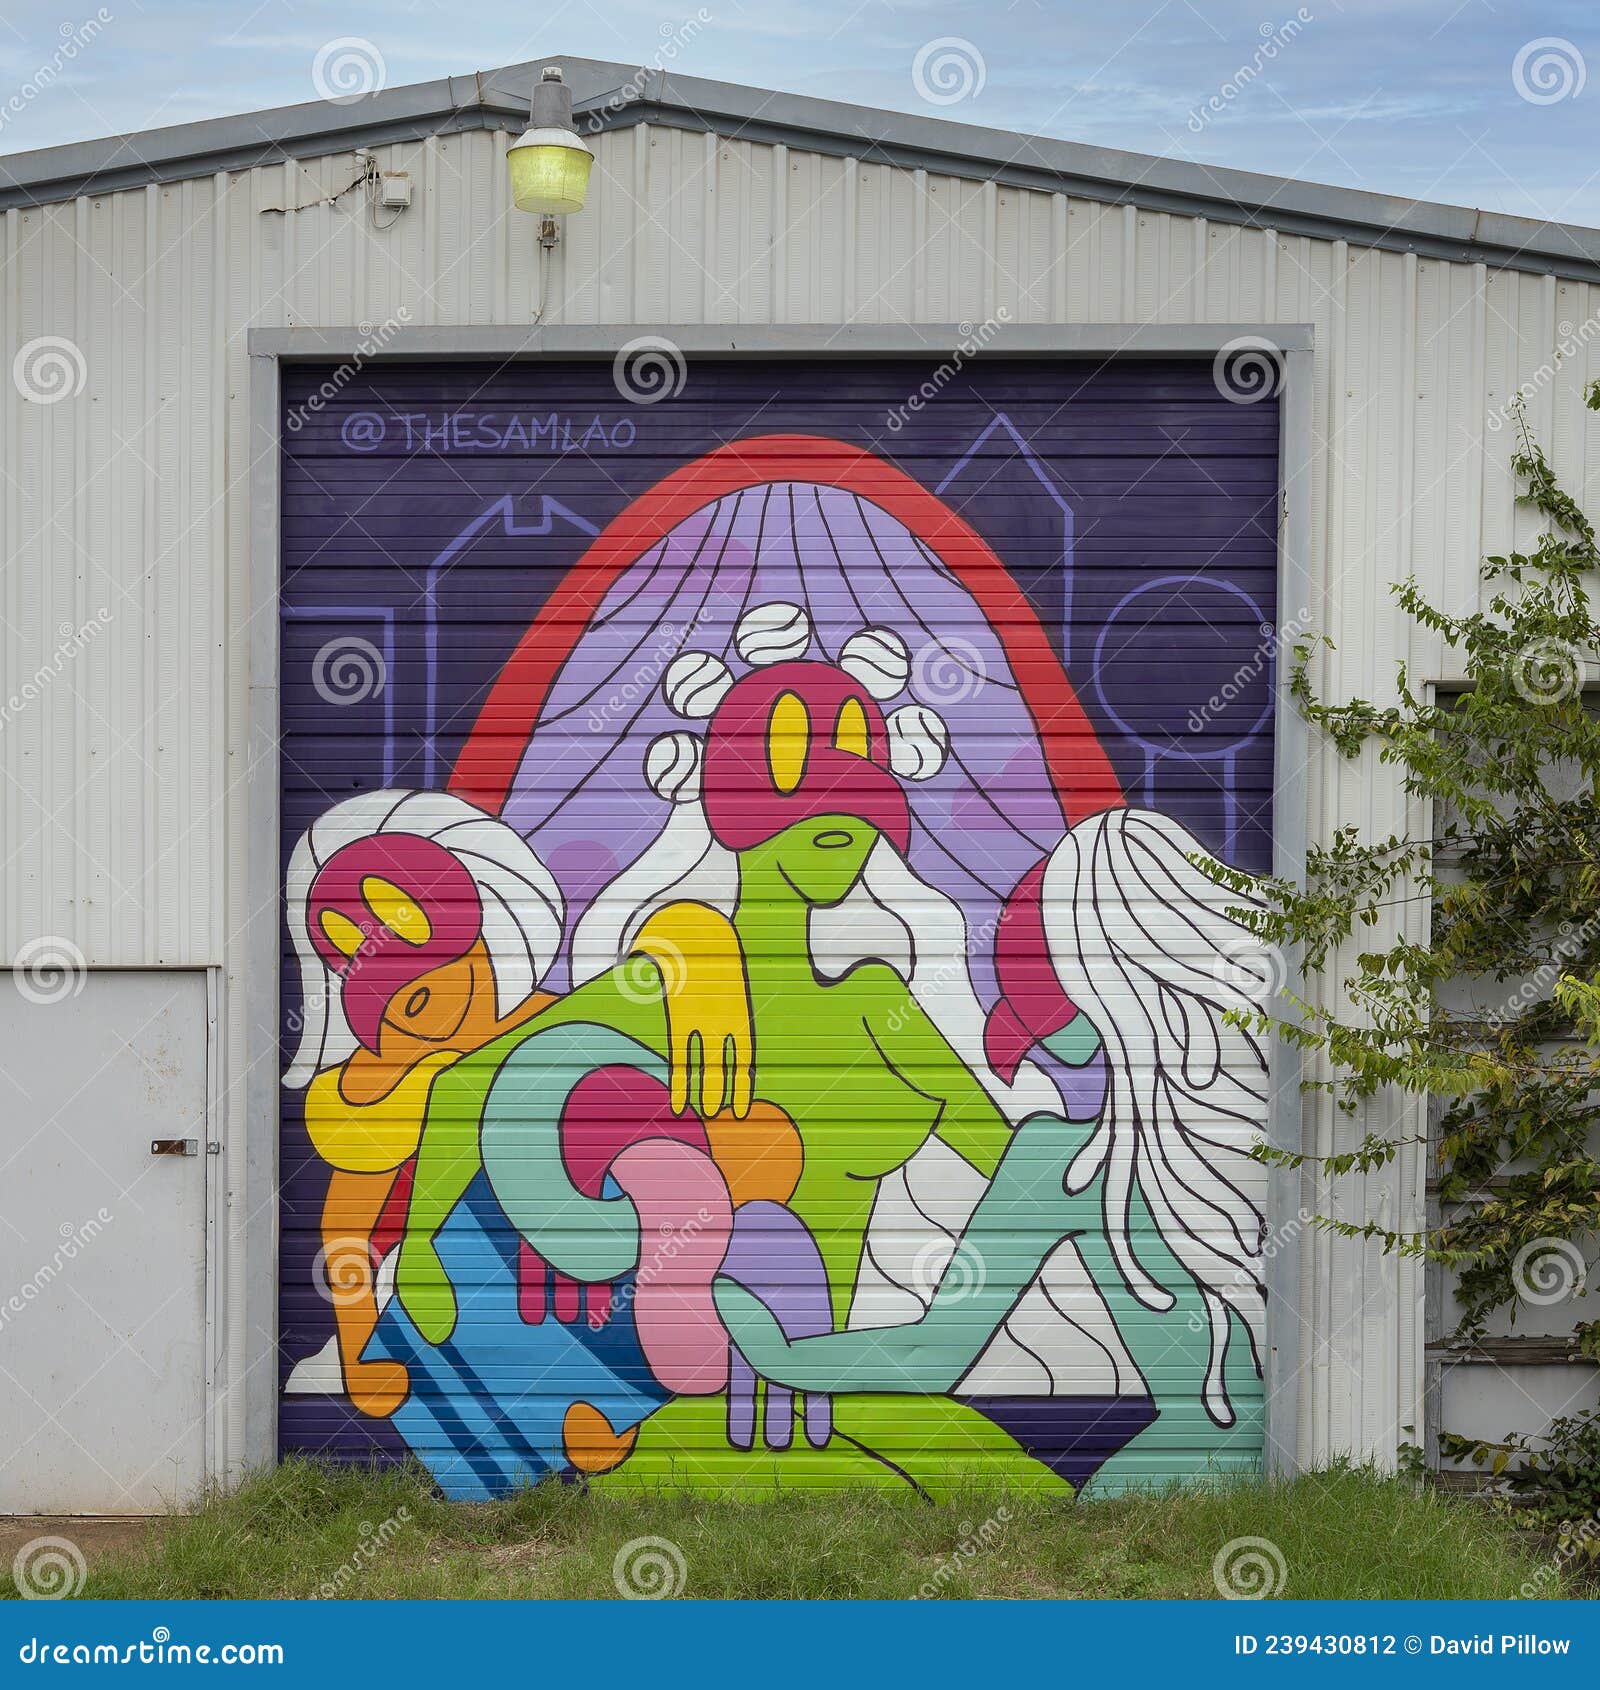 Bispo Mural Arts District De Batgirl, Dallas, Texas Fotografia